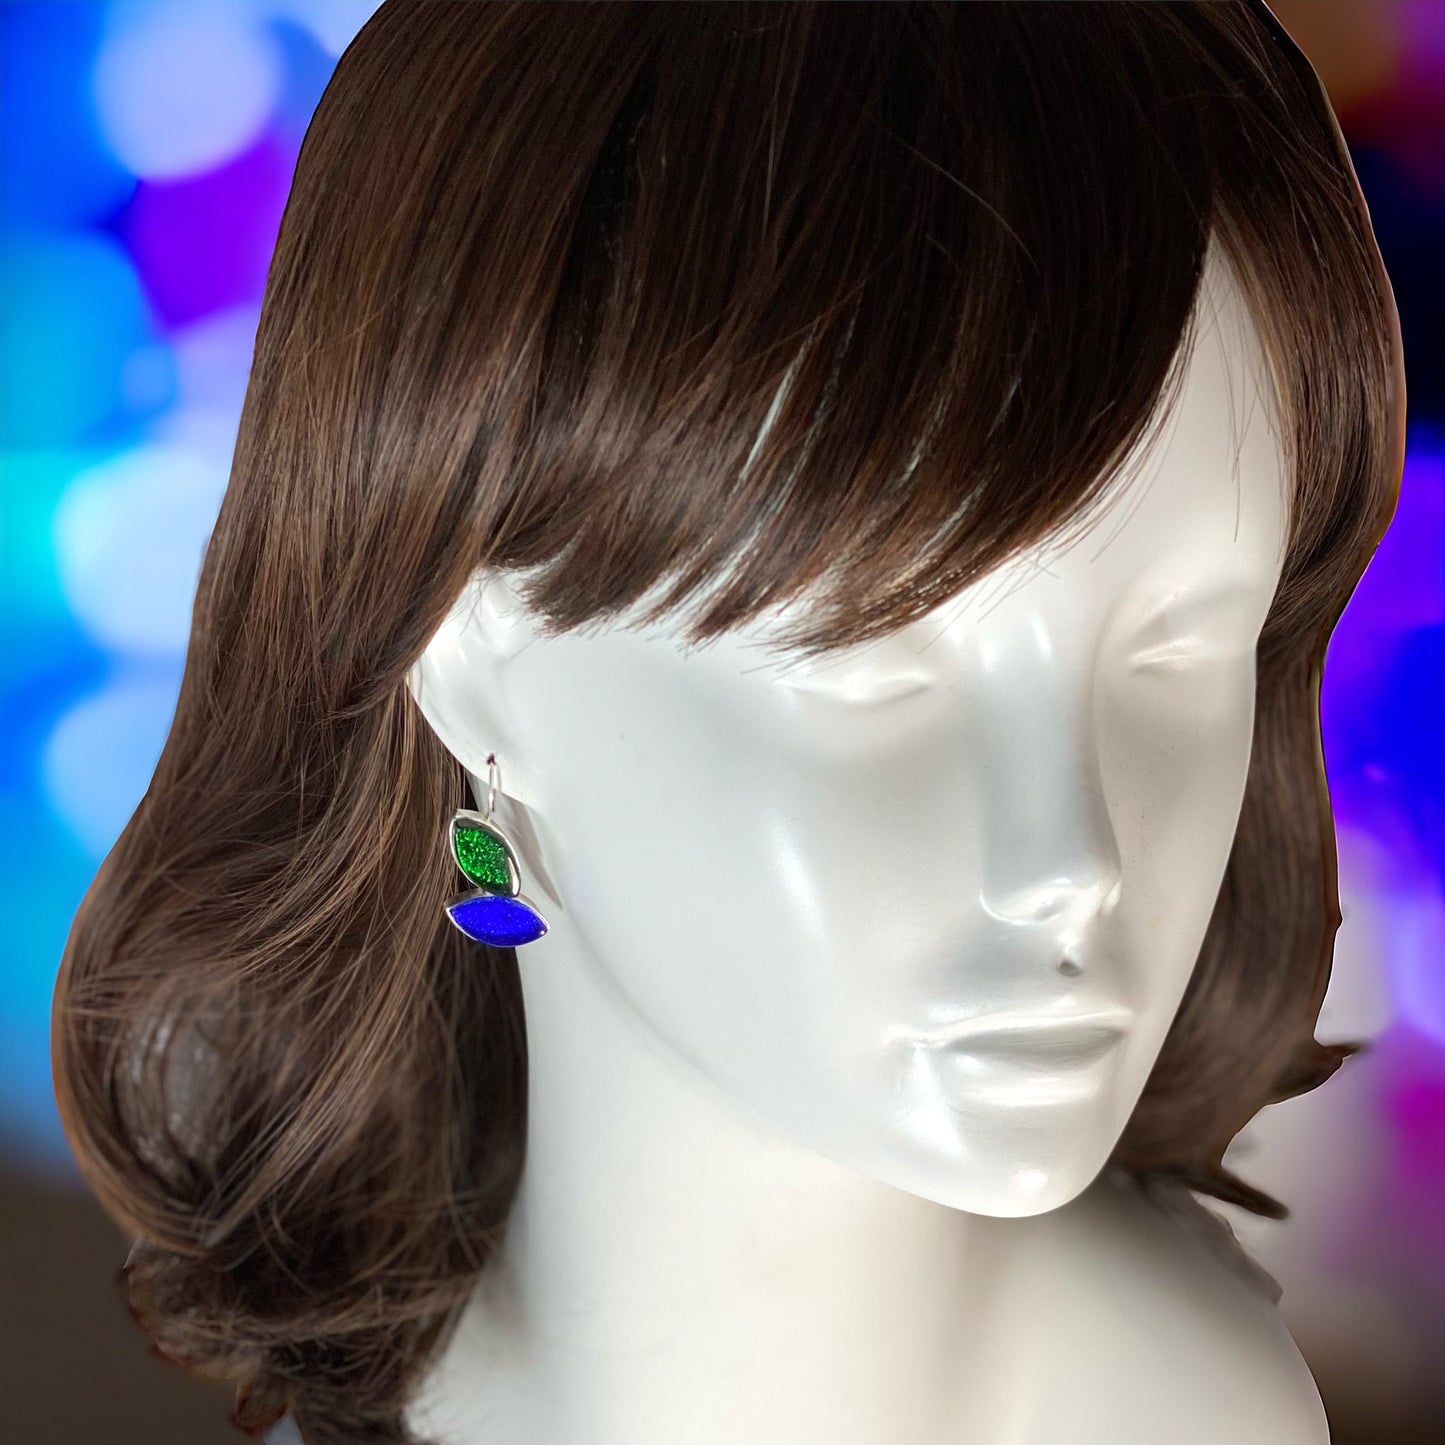 MCM Leaf Earrings in Emerald & Cobalt